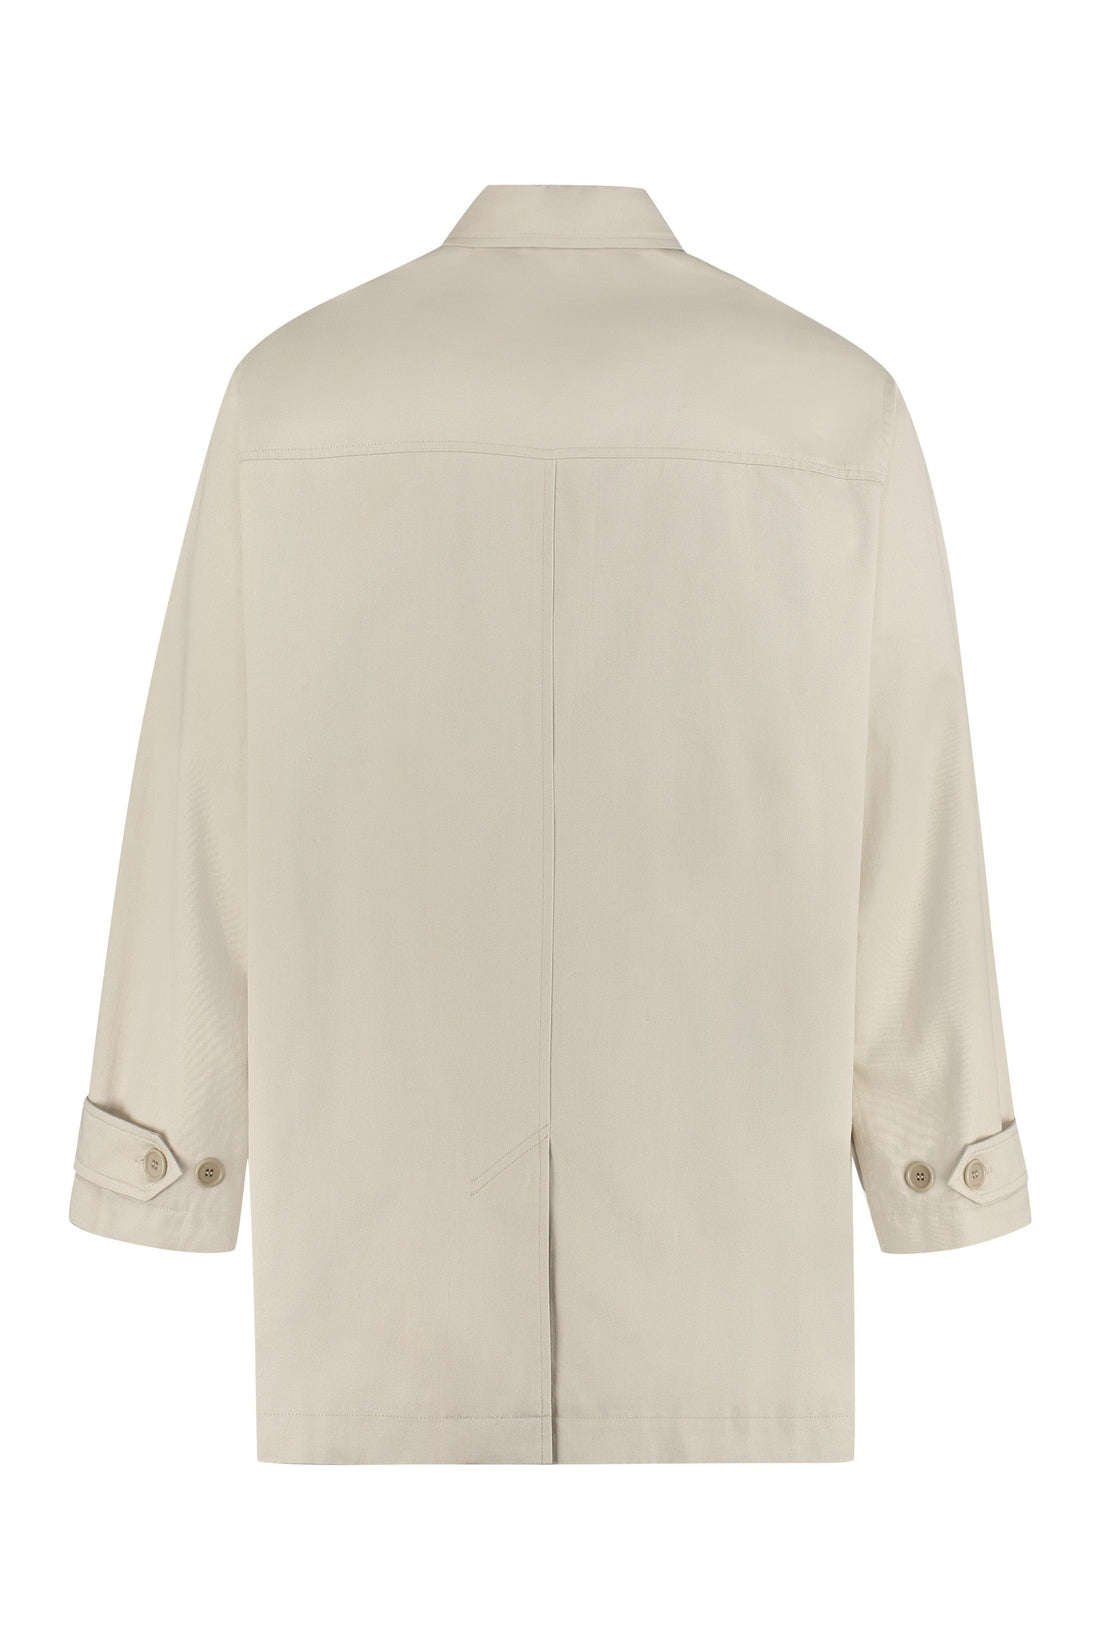 Isabel Marant Étoile-OUTLET-SALE-Pierry button-front cotton jacket-ARCHIVIST